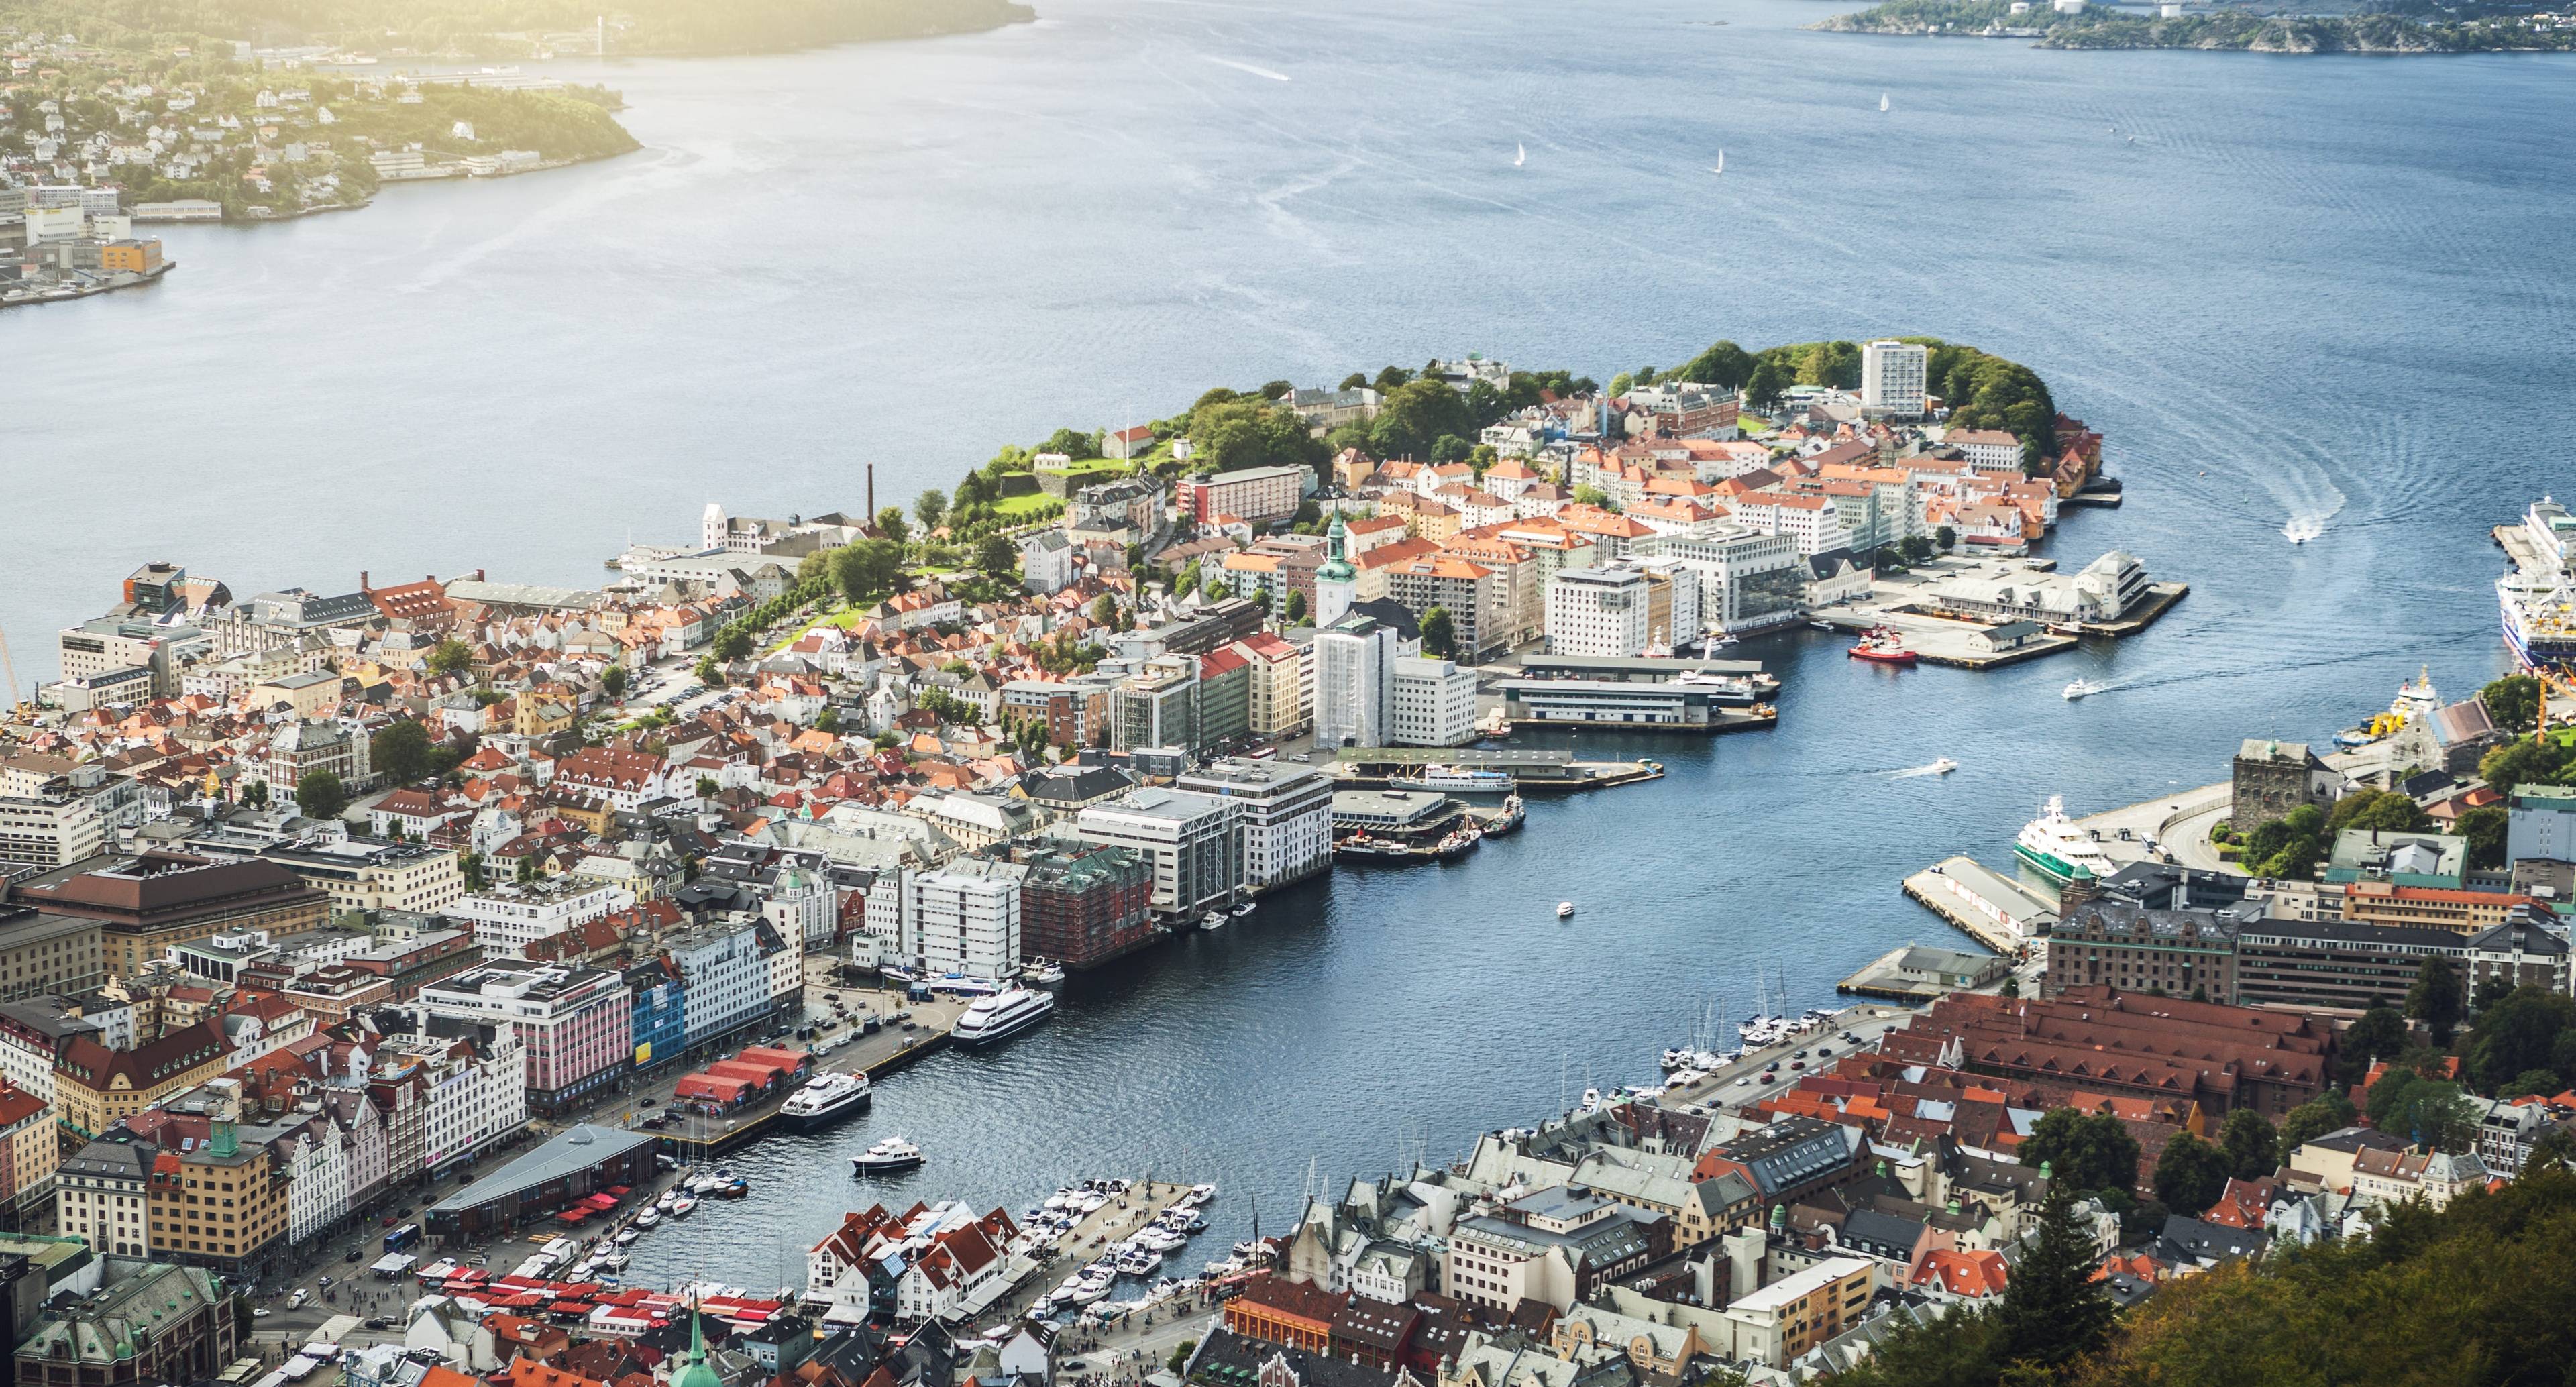 Descubra las maravillosas montañas que rodean la ciudad de Bergen mientras se embarca en esta aventura por la famosa costa de Noruega